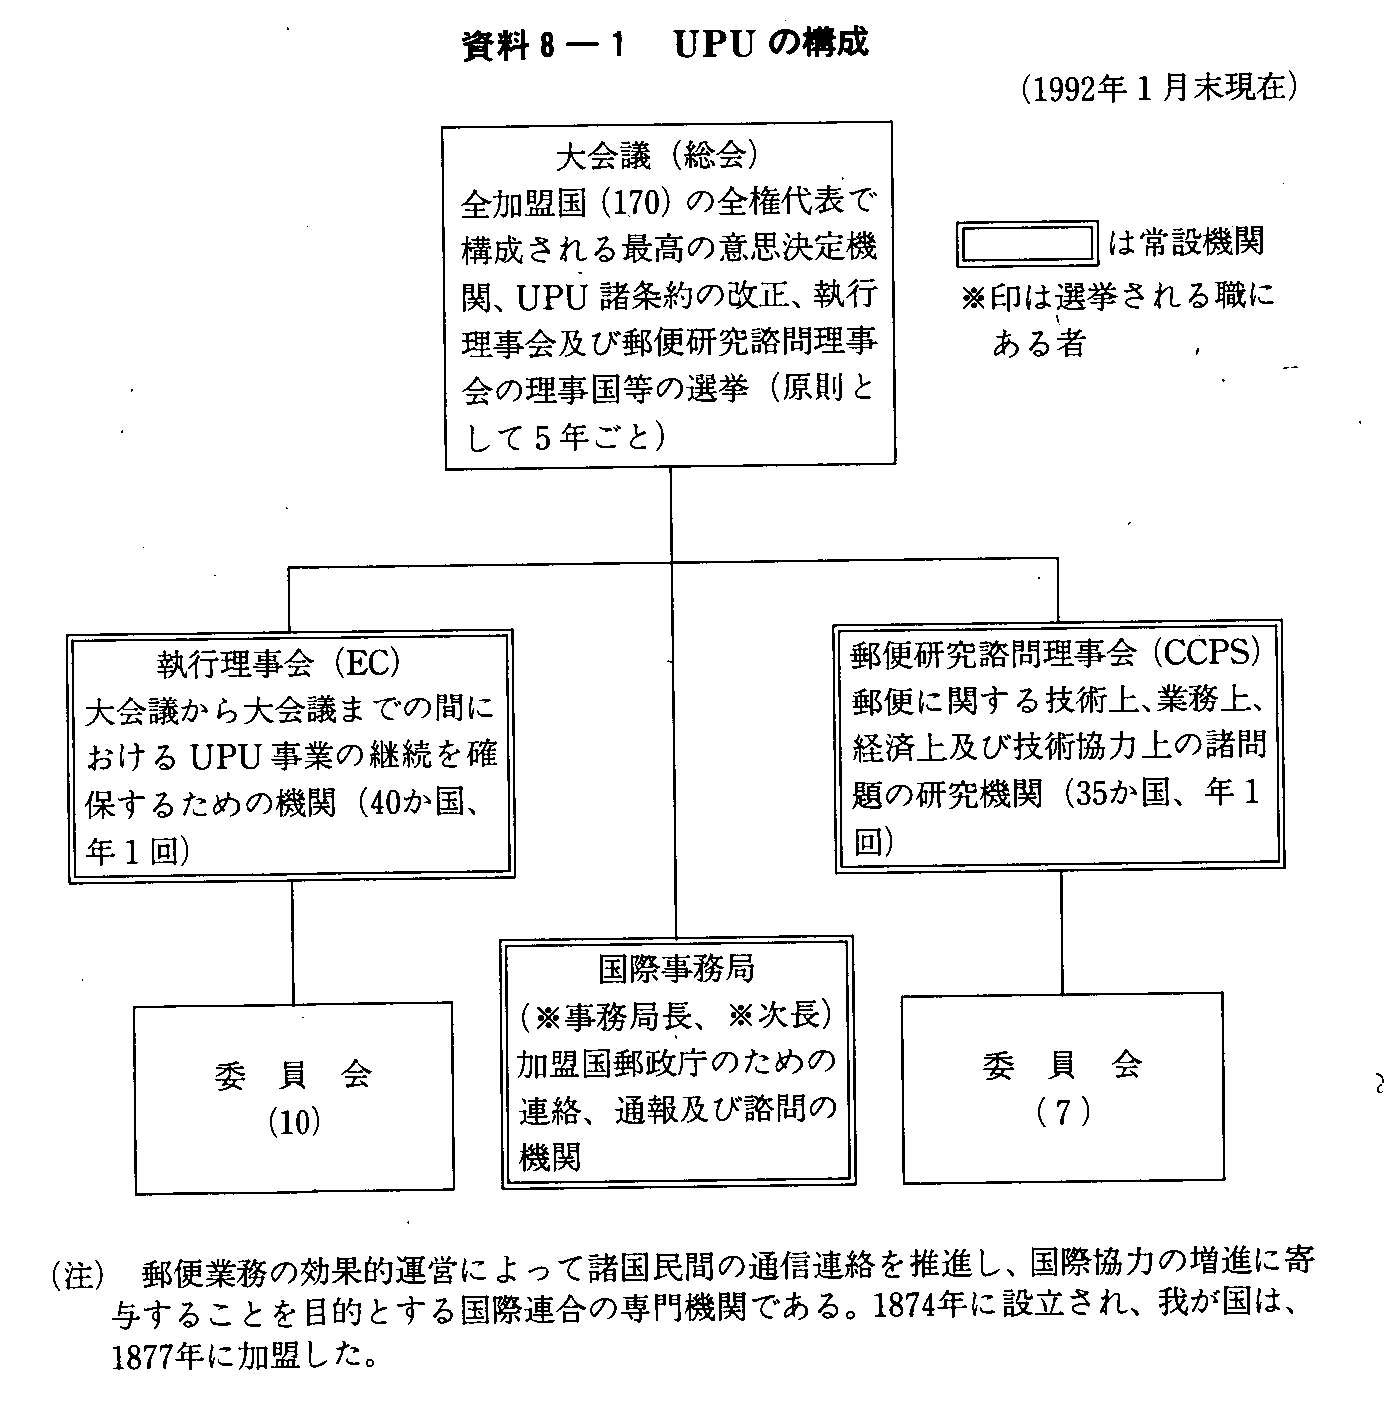 資料8-1 UPUの構成(1992年1月末現在)